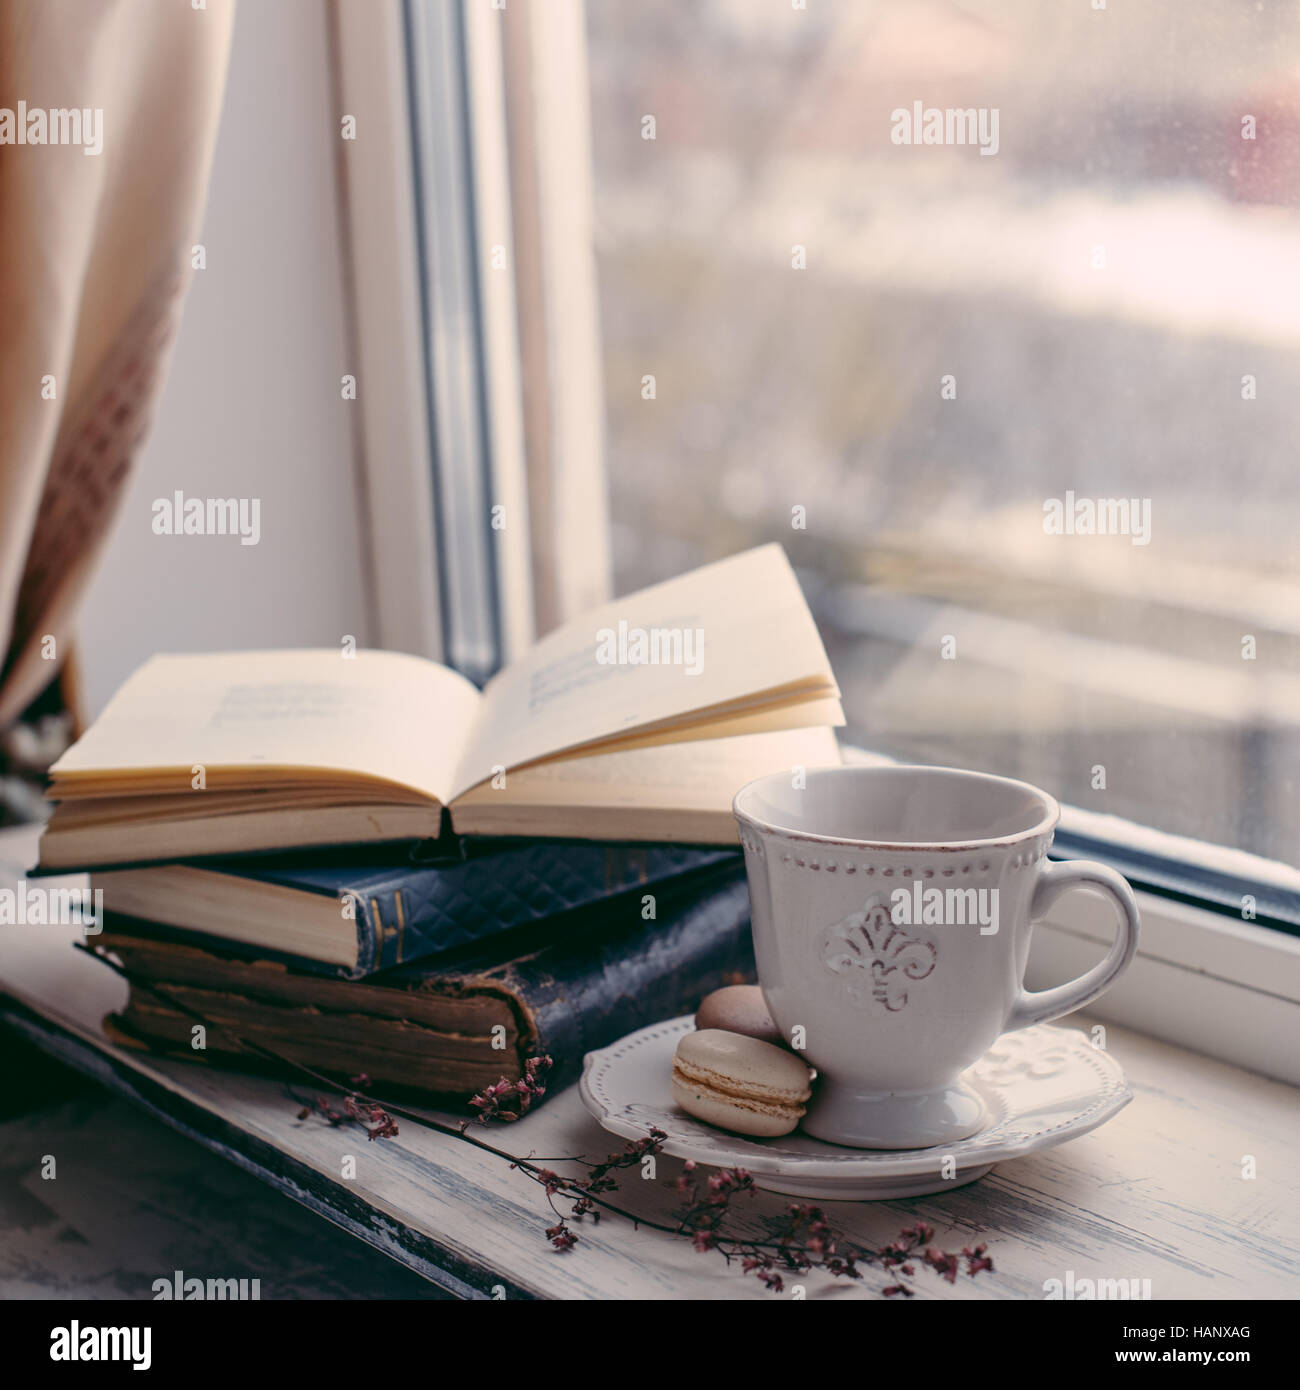 Accogliente winter ancora in vita: la tazza di caffè caldo e il libro aperto sul davanzale vintage contro la neve paesaggio dall'esterno. Foto Stock